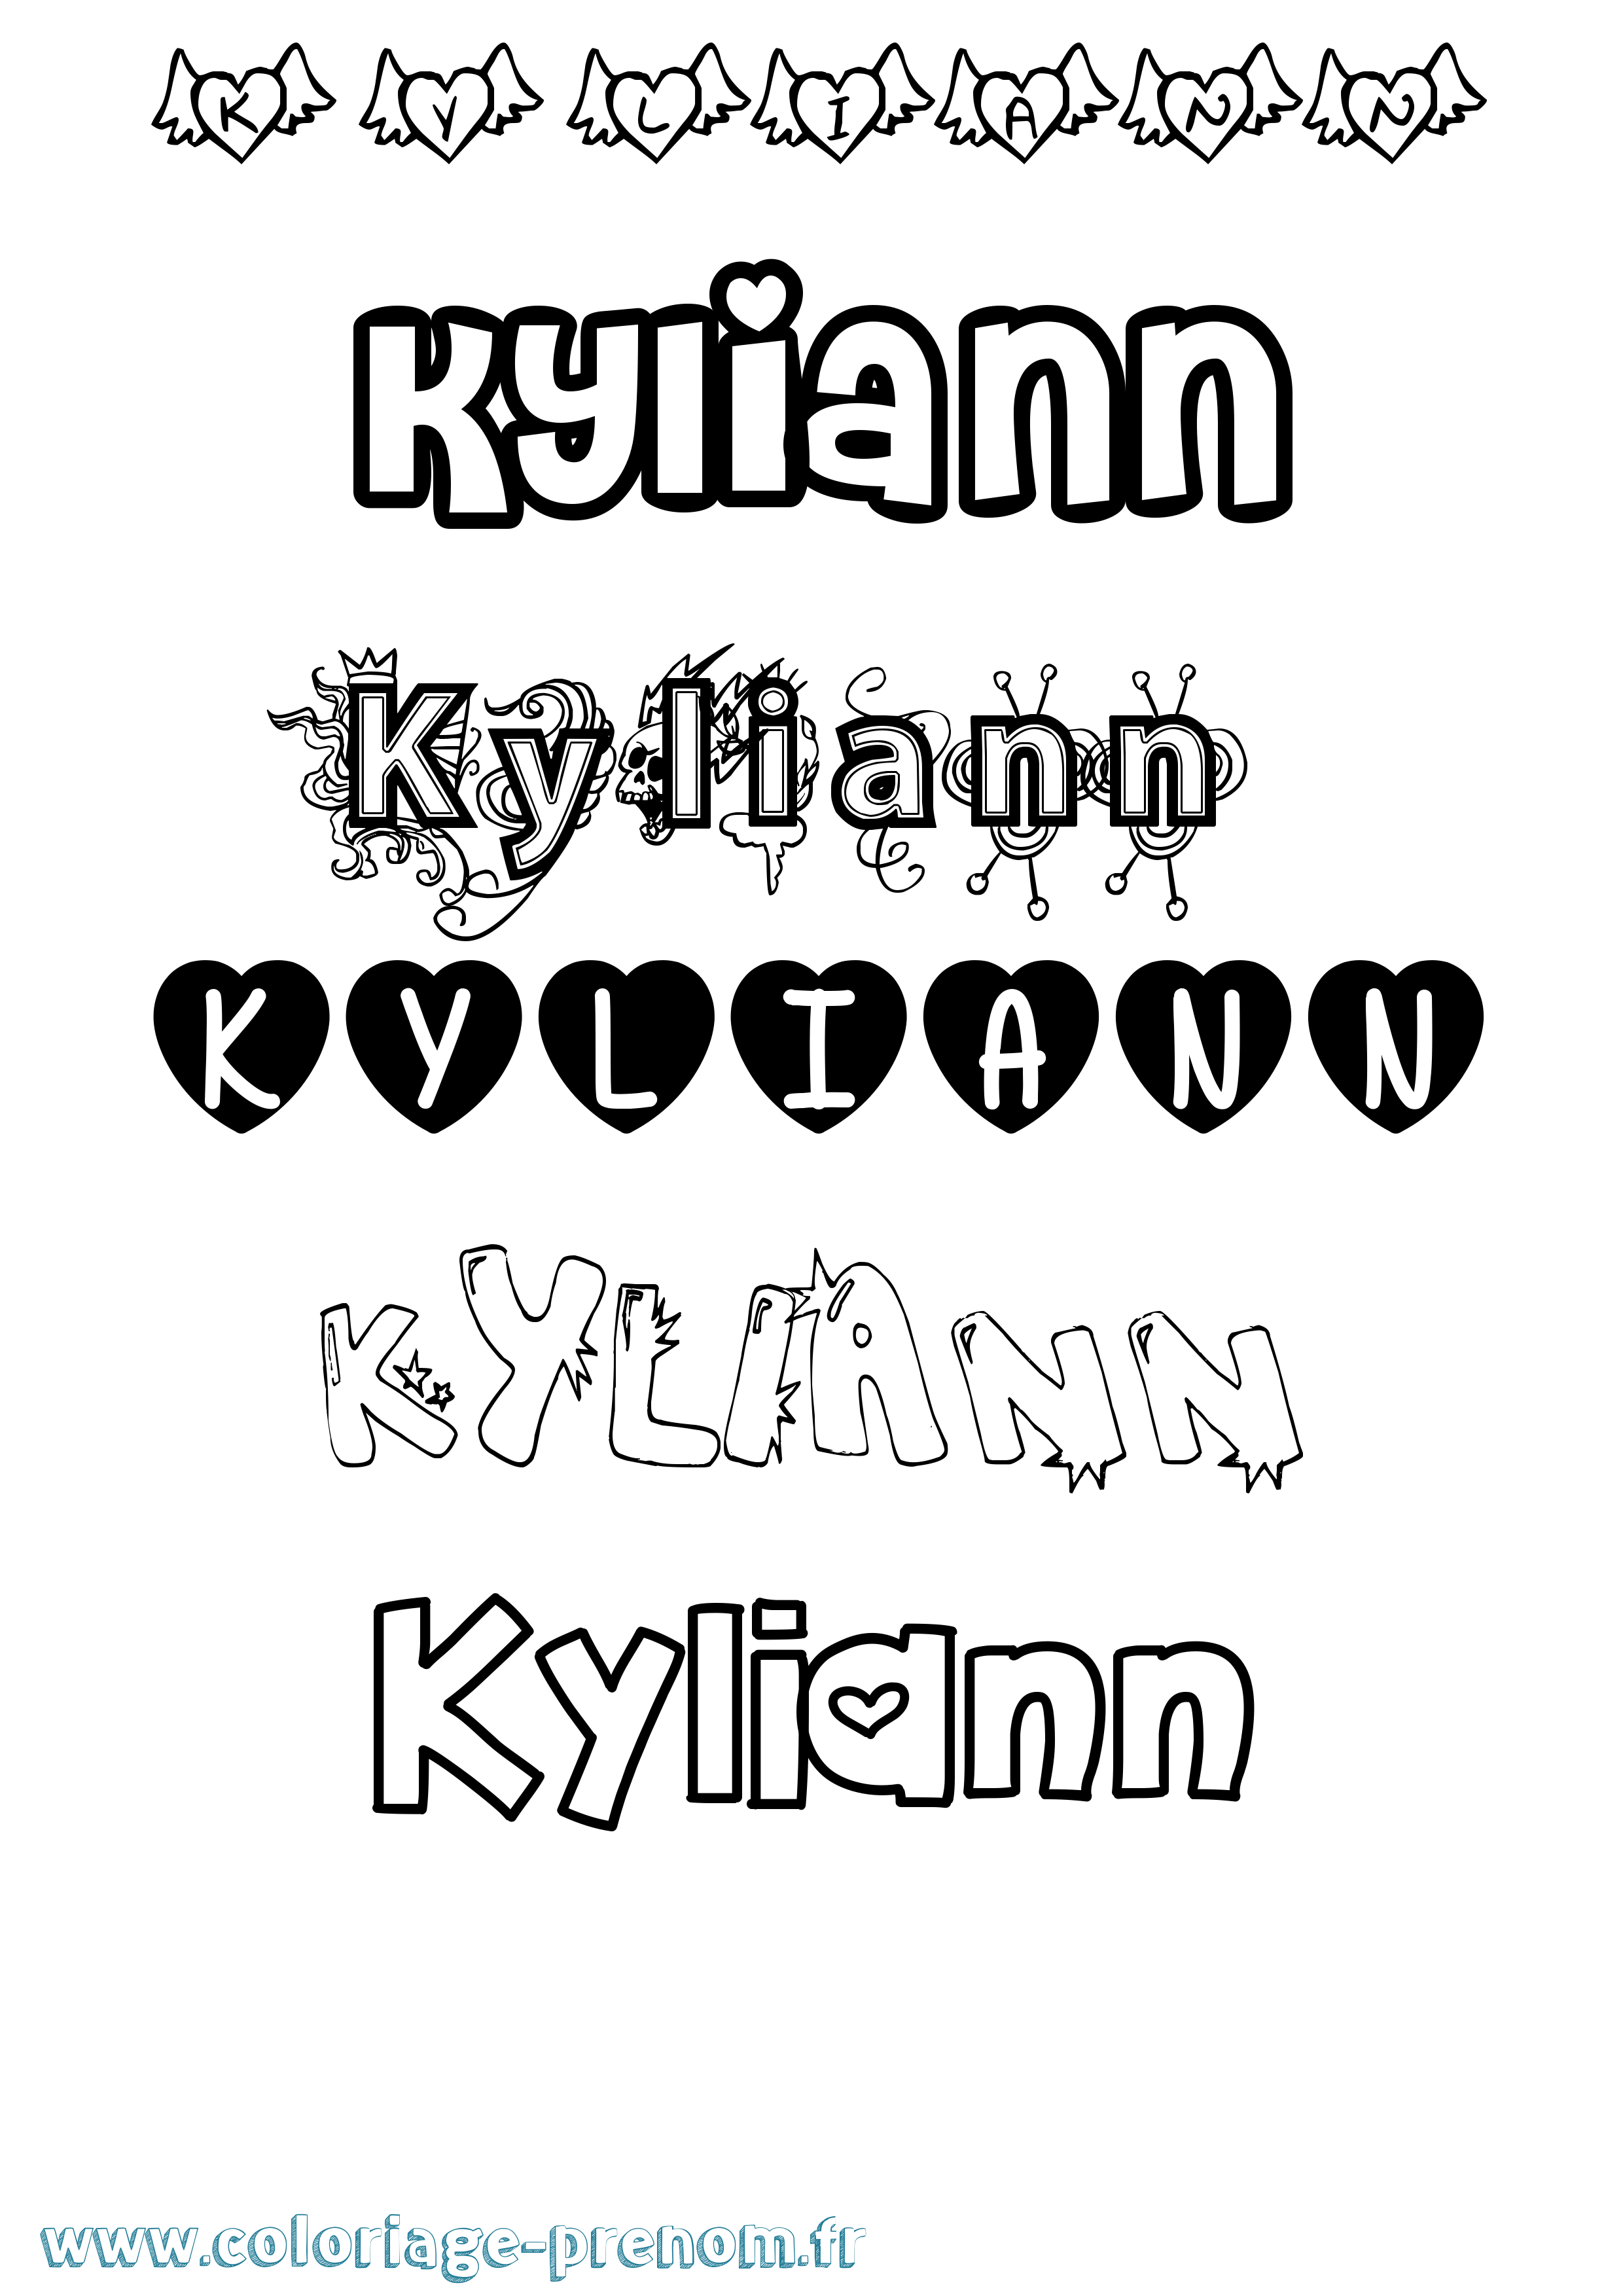 Coloriage prénom Kyliann